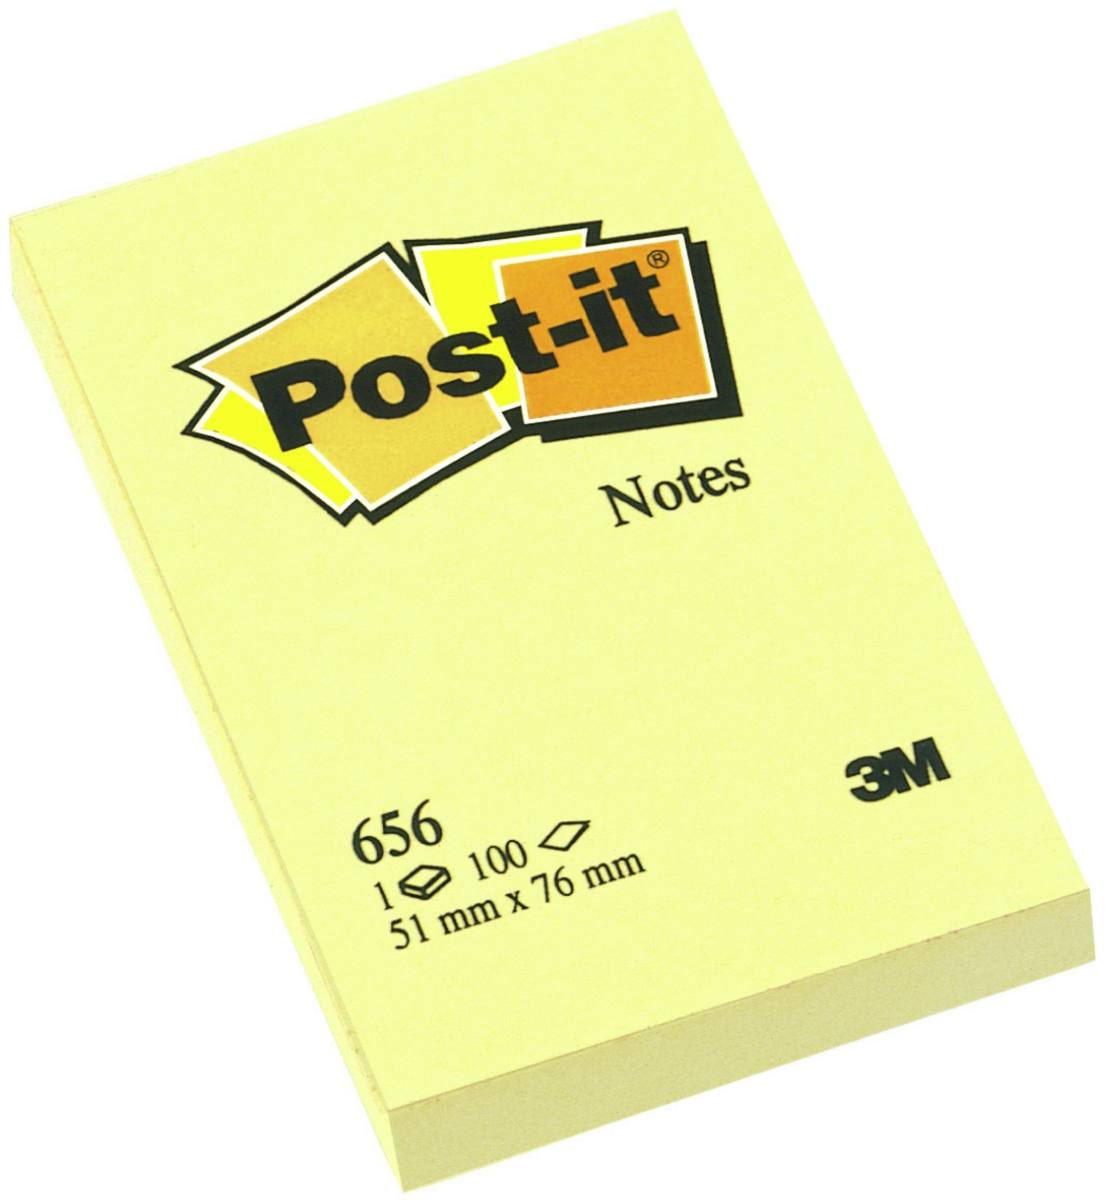 3M Post-it Notes 656, 51 mm x 76 mm, gelb, 1 Block à 100 Blatt